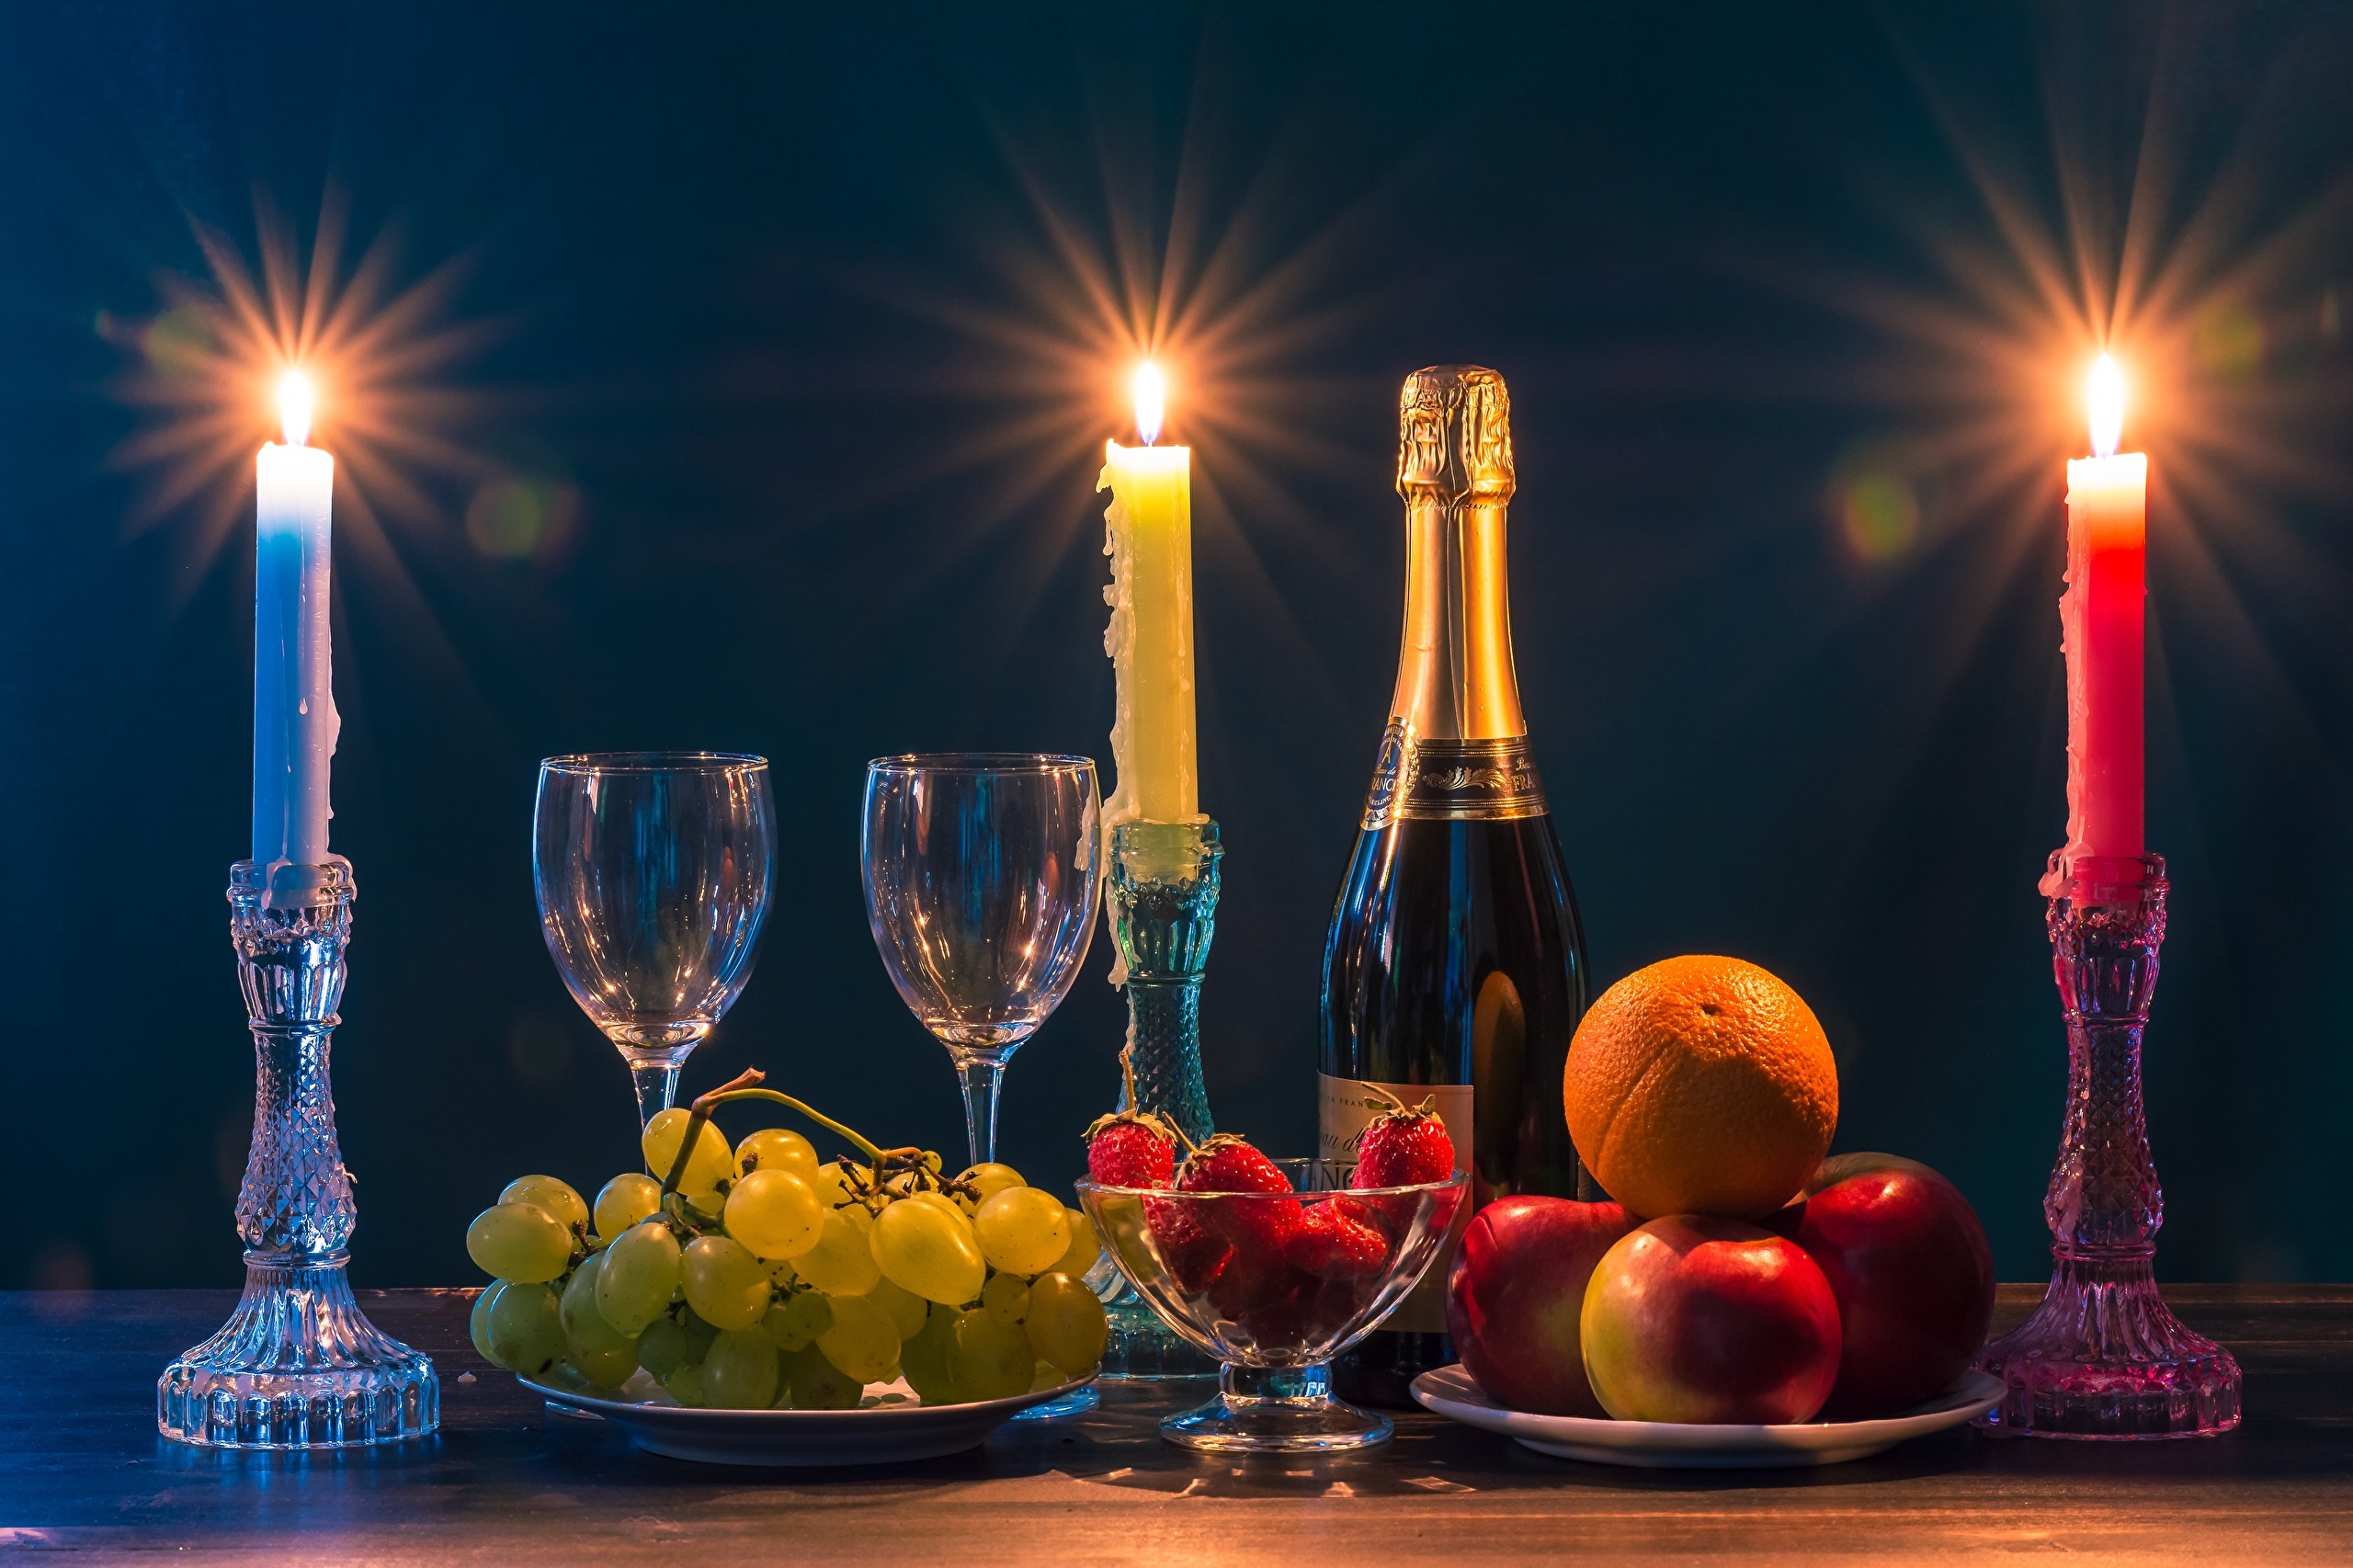 Добрый вечер свечи. Шампанское и свечи. Натюрморт. Бокалы шампанское со свечами. Стол с шампанским и фруктами.